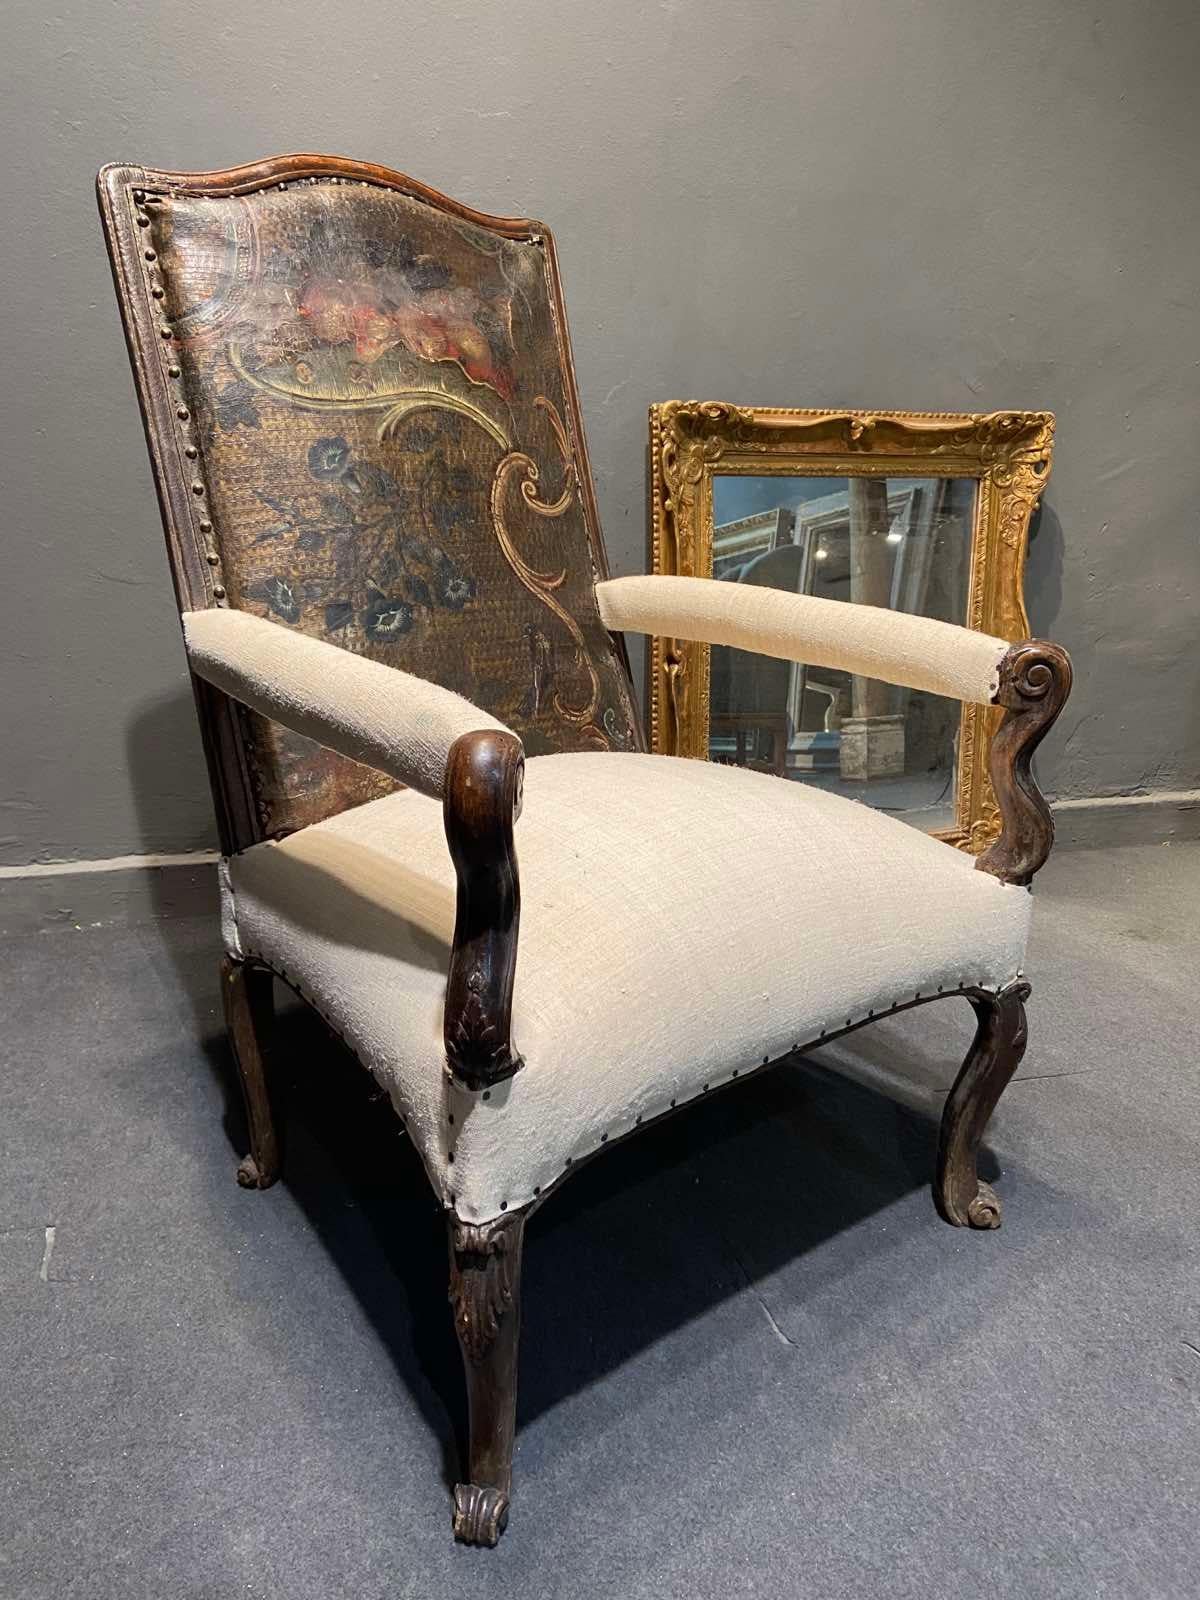 Fauteuil à haut dossier en bois moulé et sculpté, pieds courbés à rouleaux, assise et support d'accoudoir tapissés de lin beige et dossier en cuir Cordoba authentique, faisant partie de la période Louis XV.
France, vers 1790.